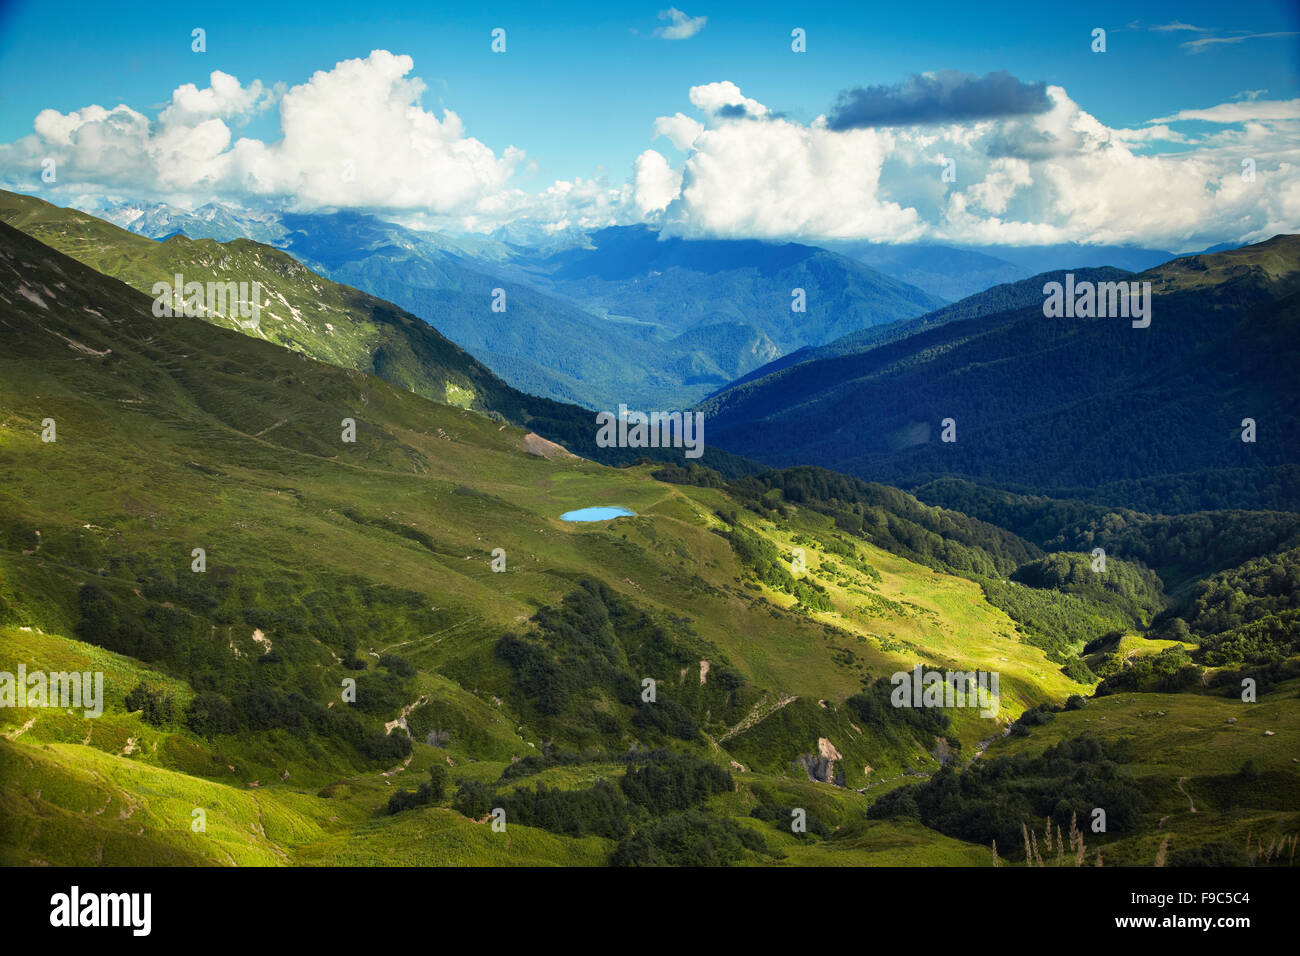 Caucasus mountains. Abkhazia Stock Photo